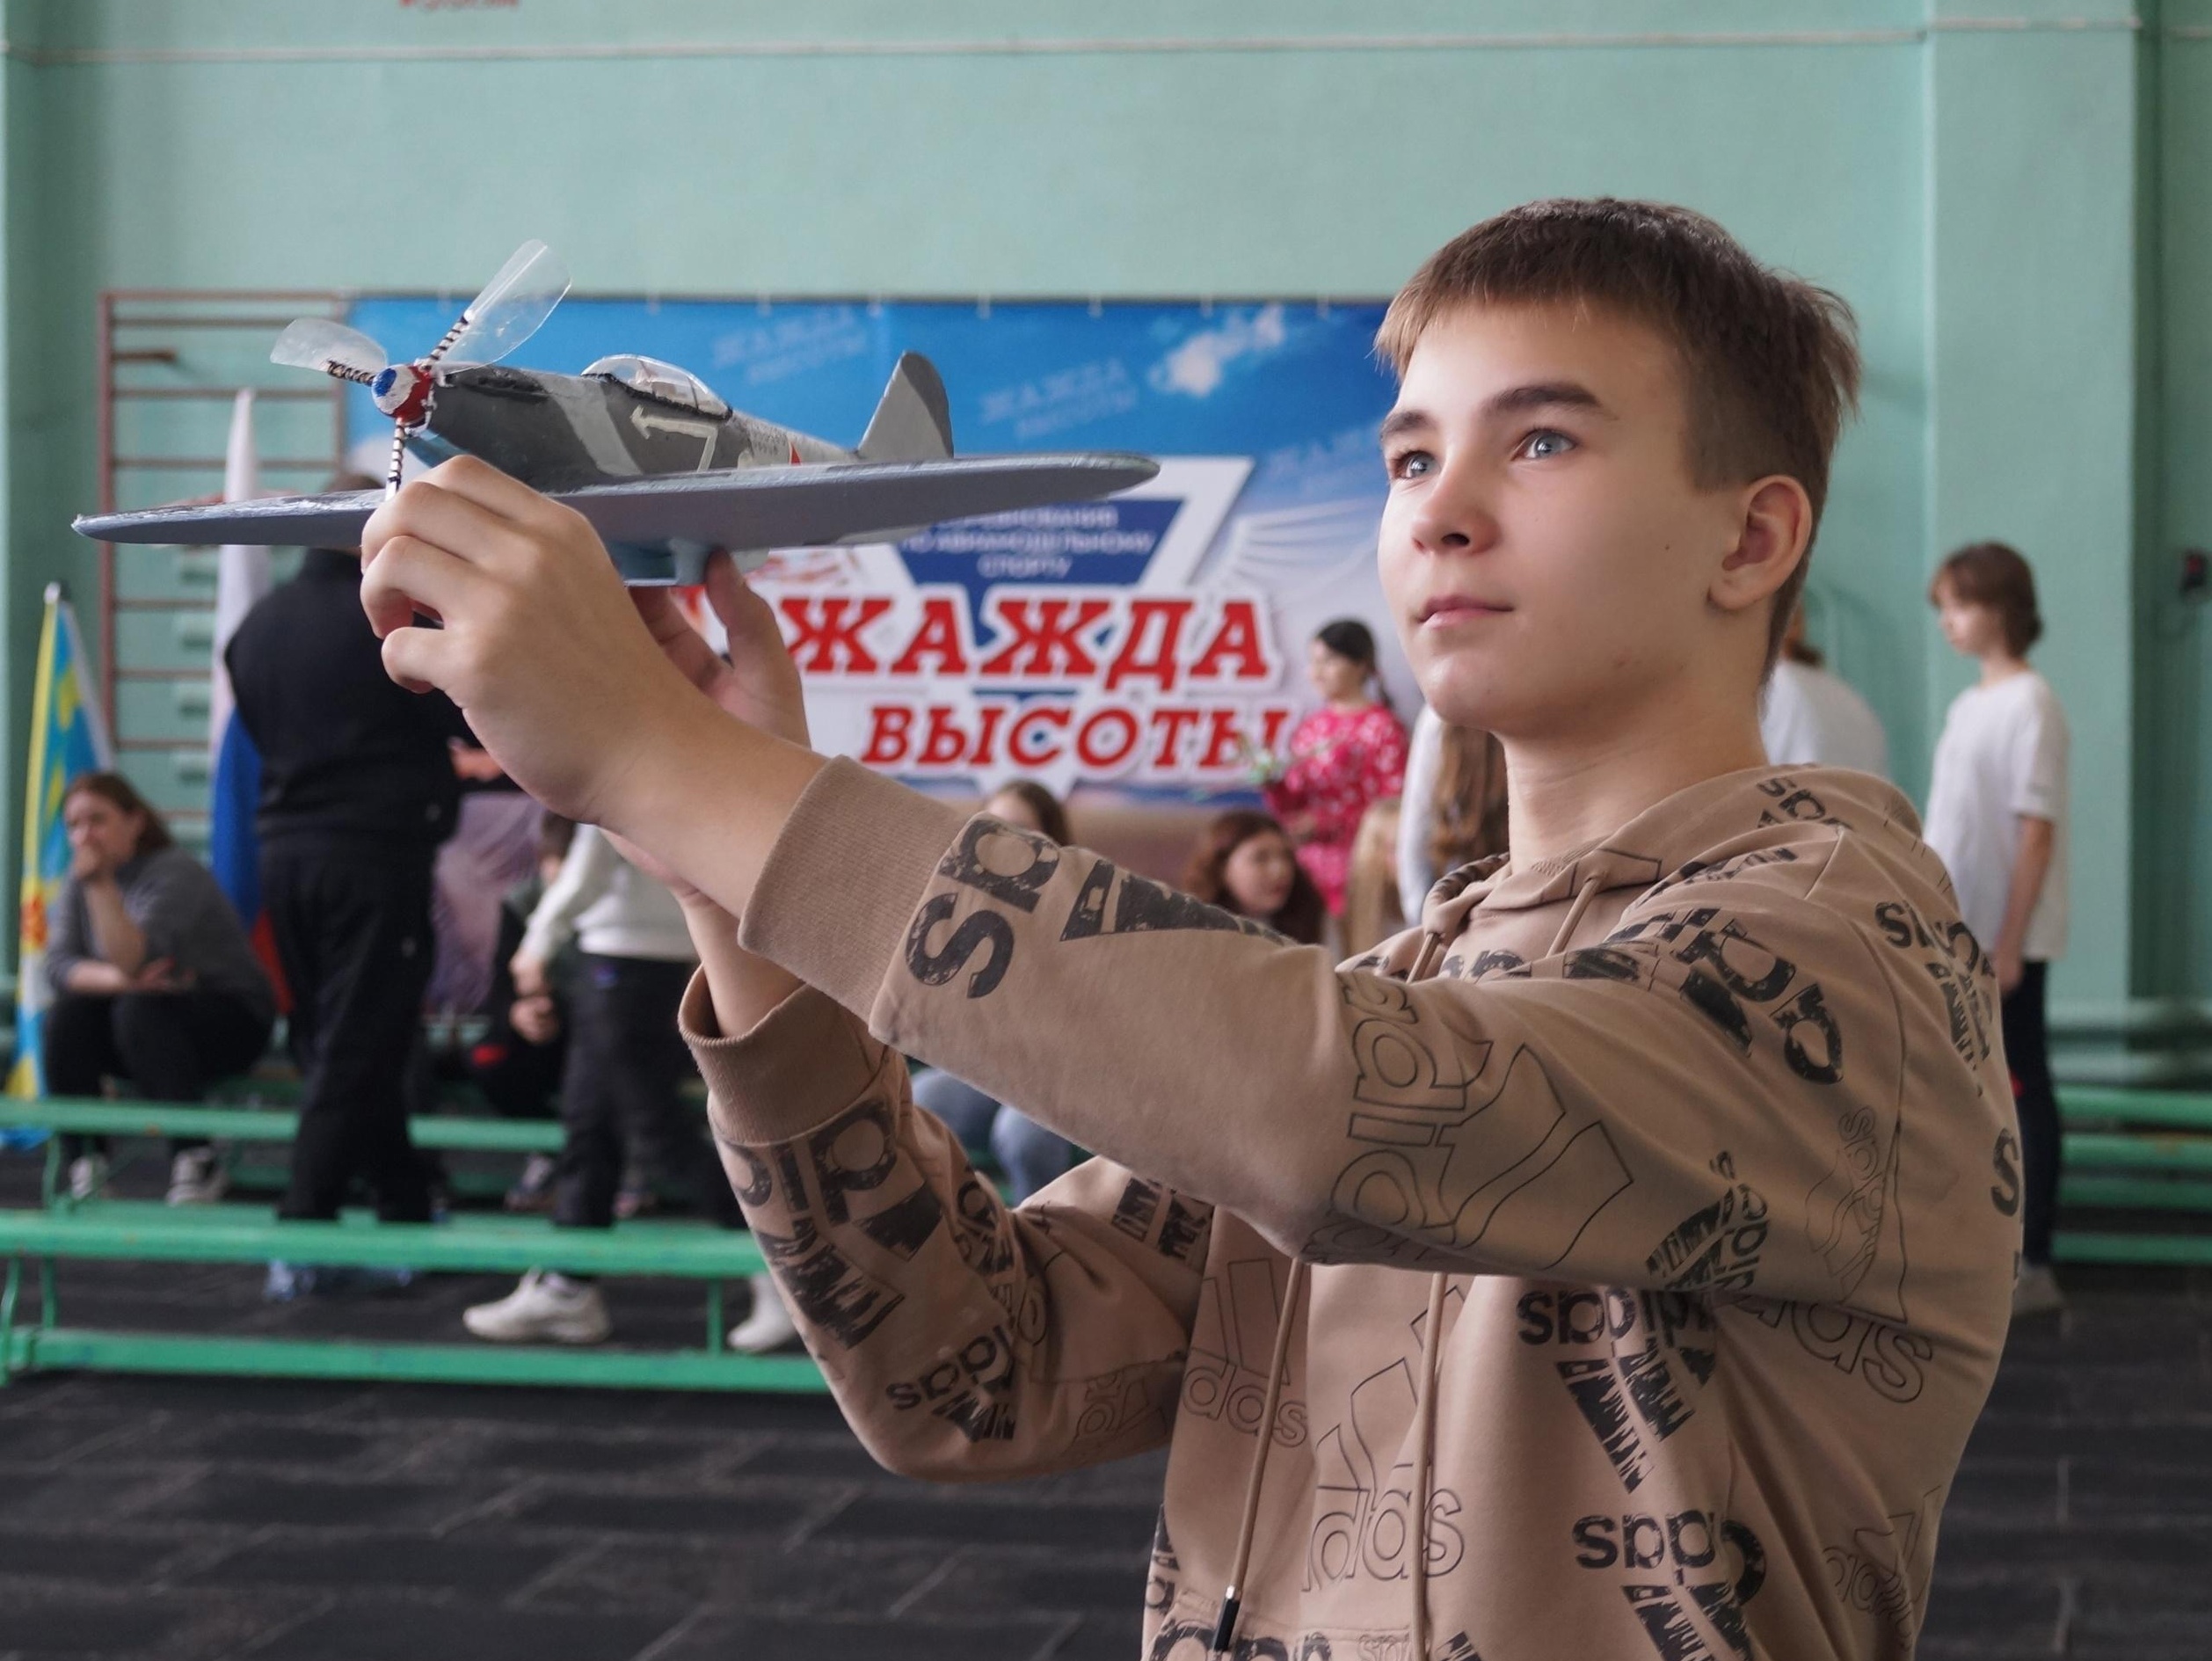 Авиамоделисты Ивановской области собрались в Кинешме на «Жажде высоты»